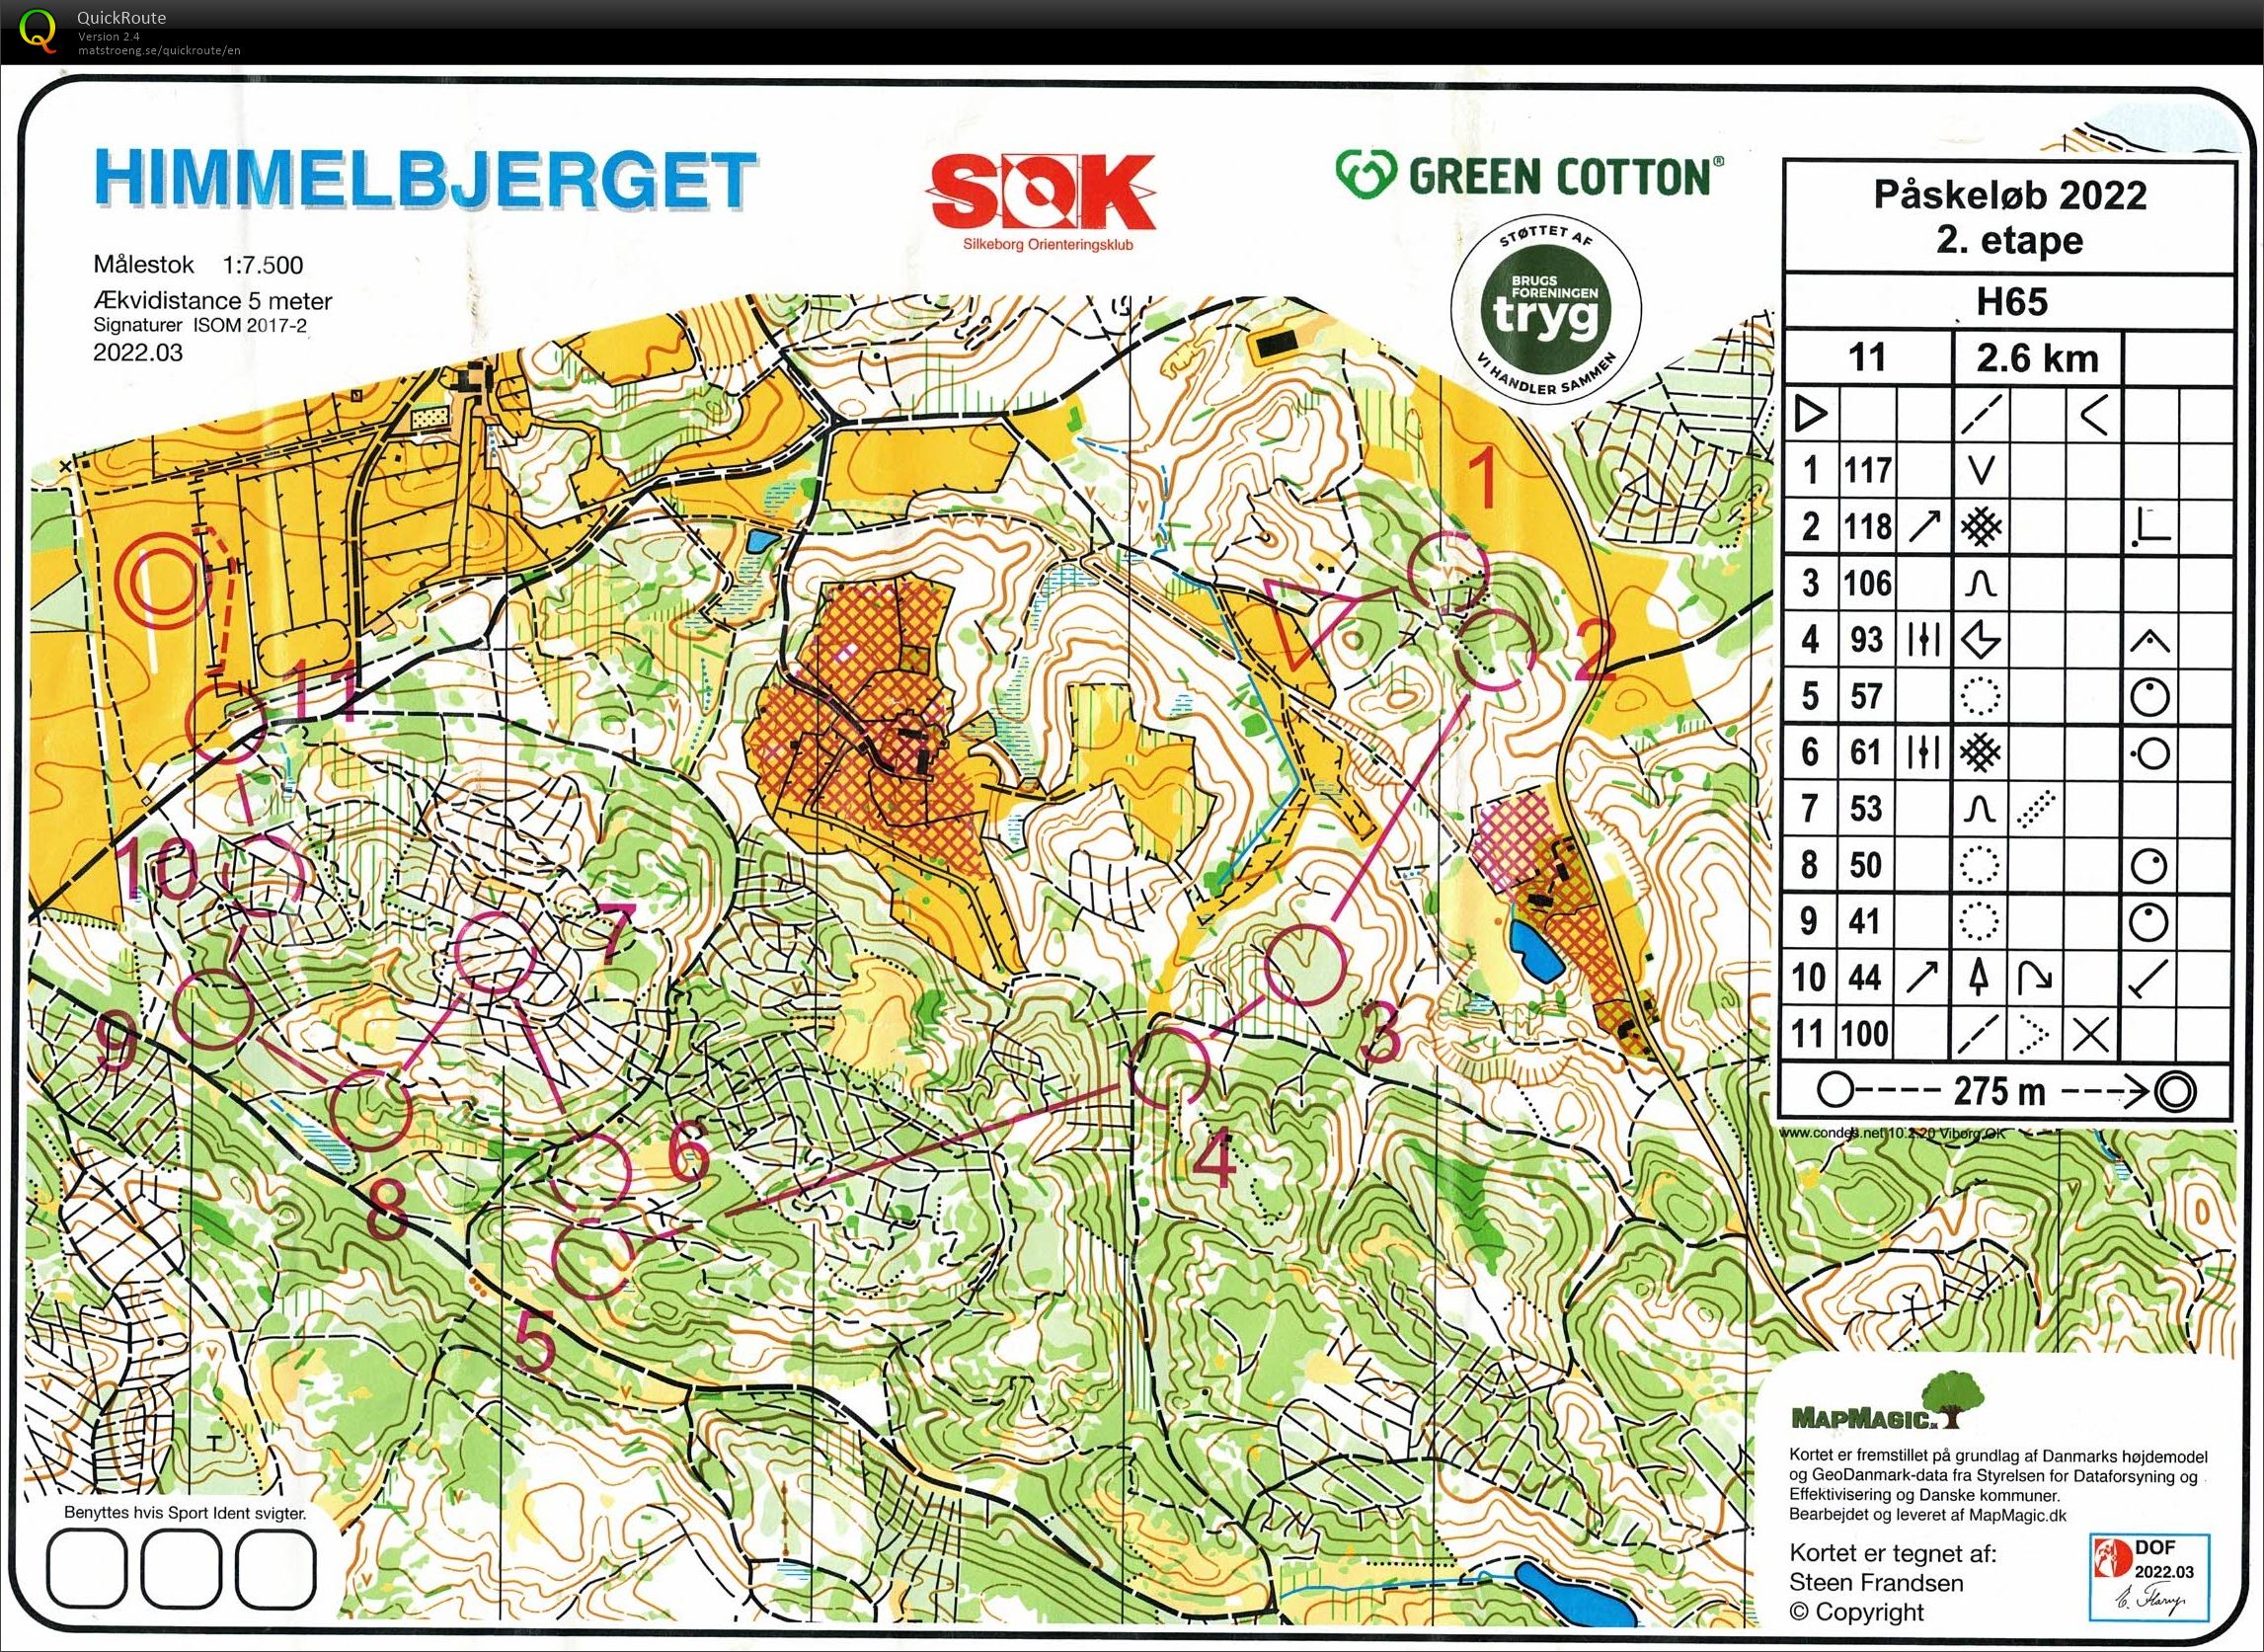 Påskeløb, etape 2, Himmelbjerget, H65 (15-04-2022)